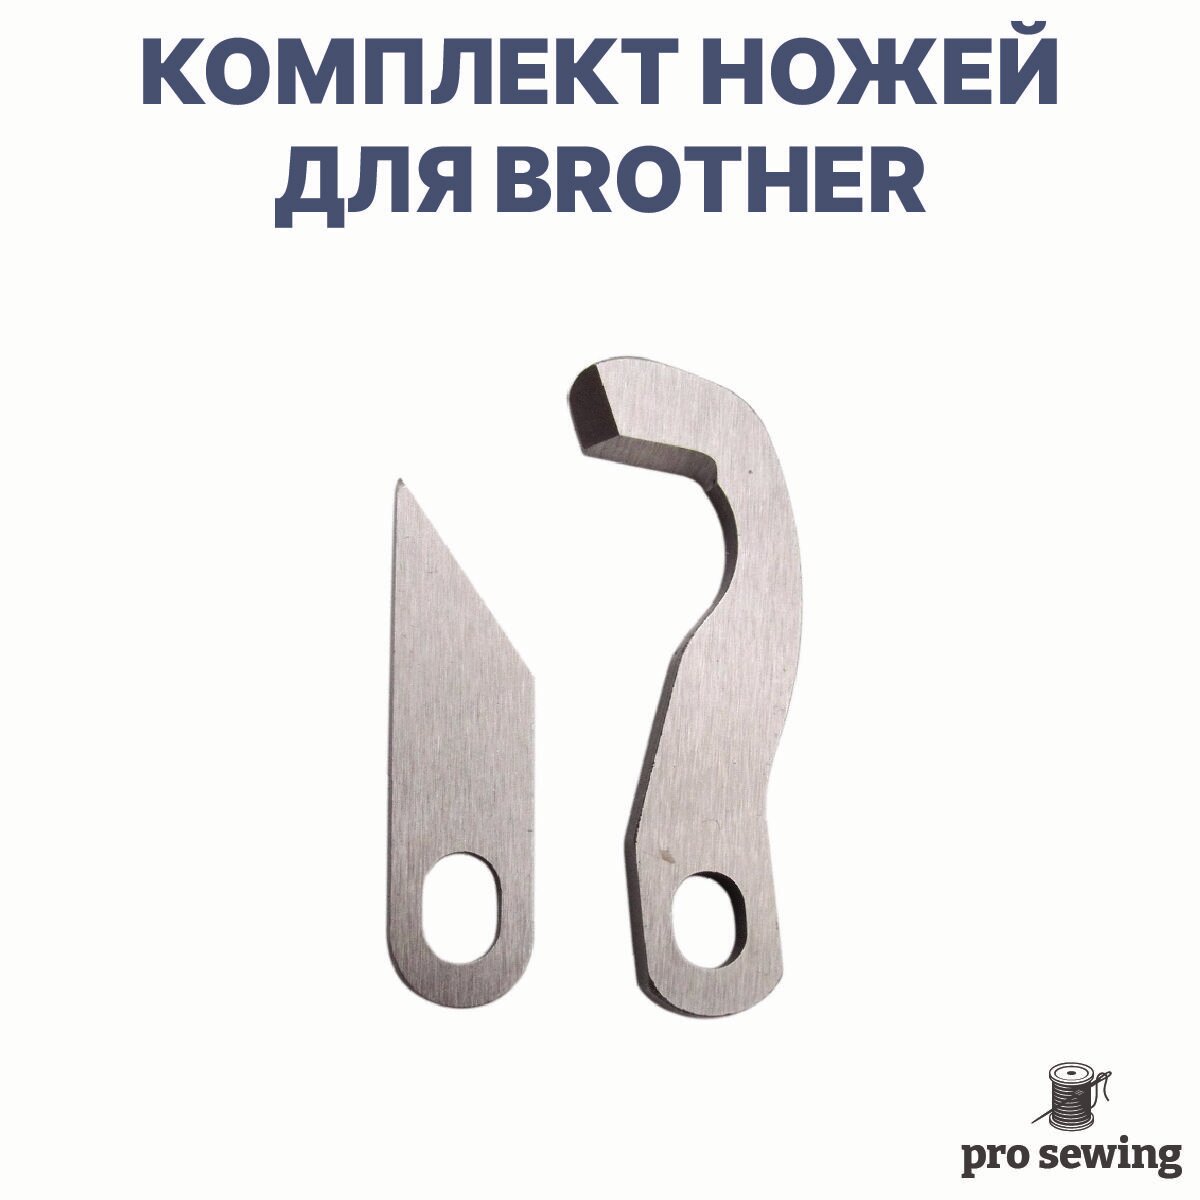 Верхний и нижний нож для швейных машин Brother 4100D, 1534D, 1034DX, 1334DE, 3034d, 4234d и других